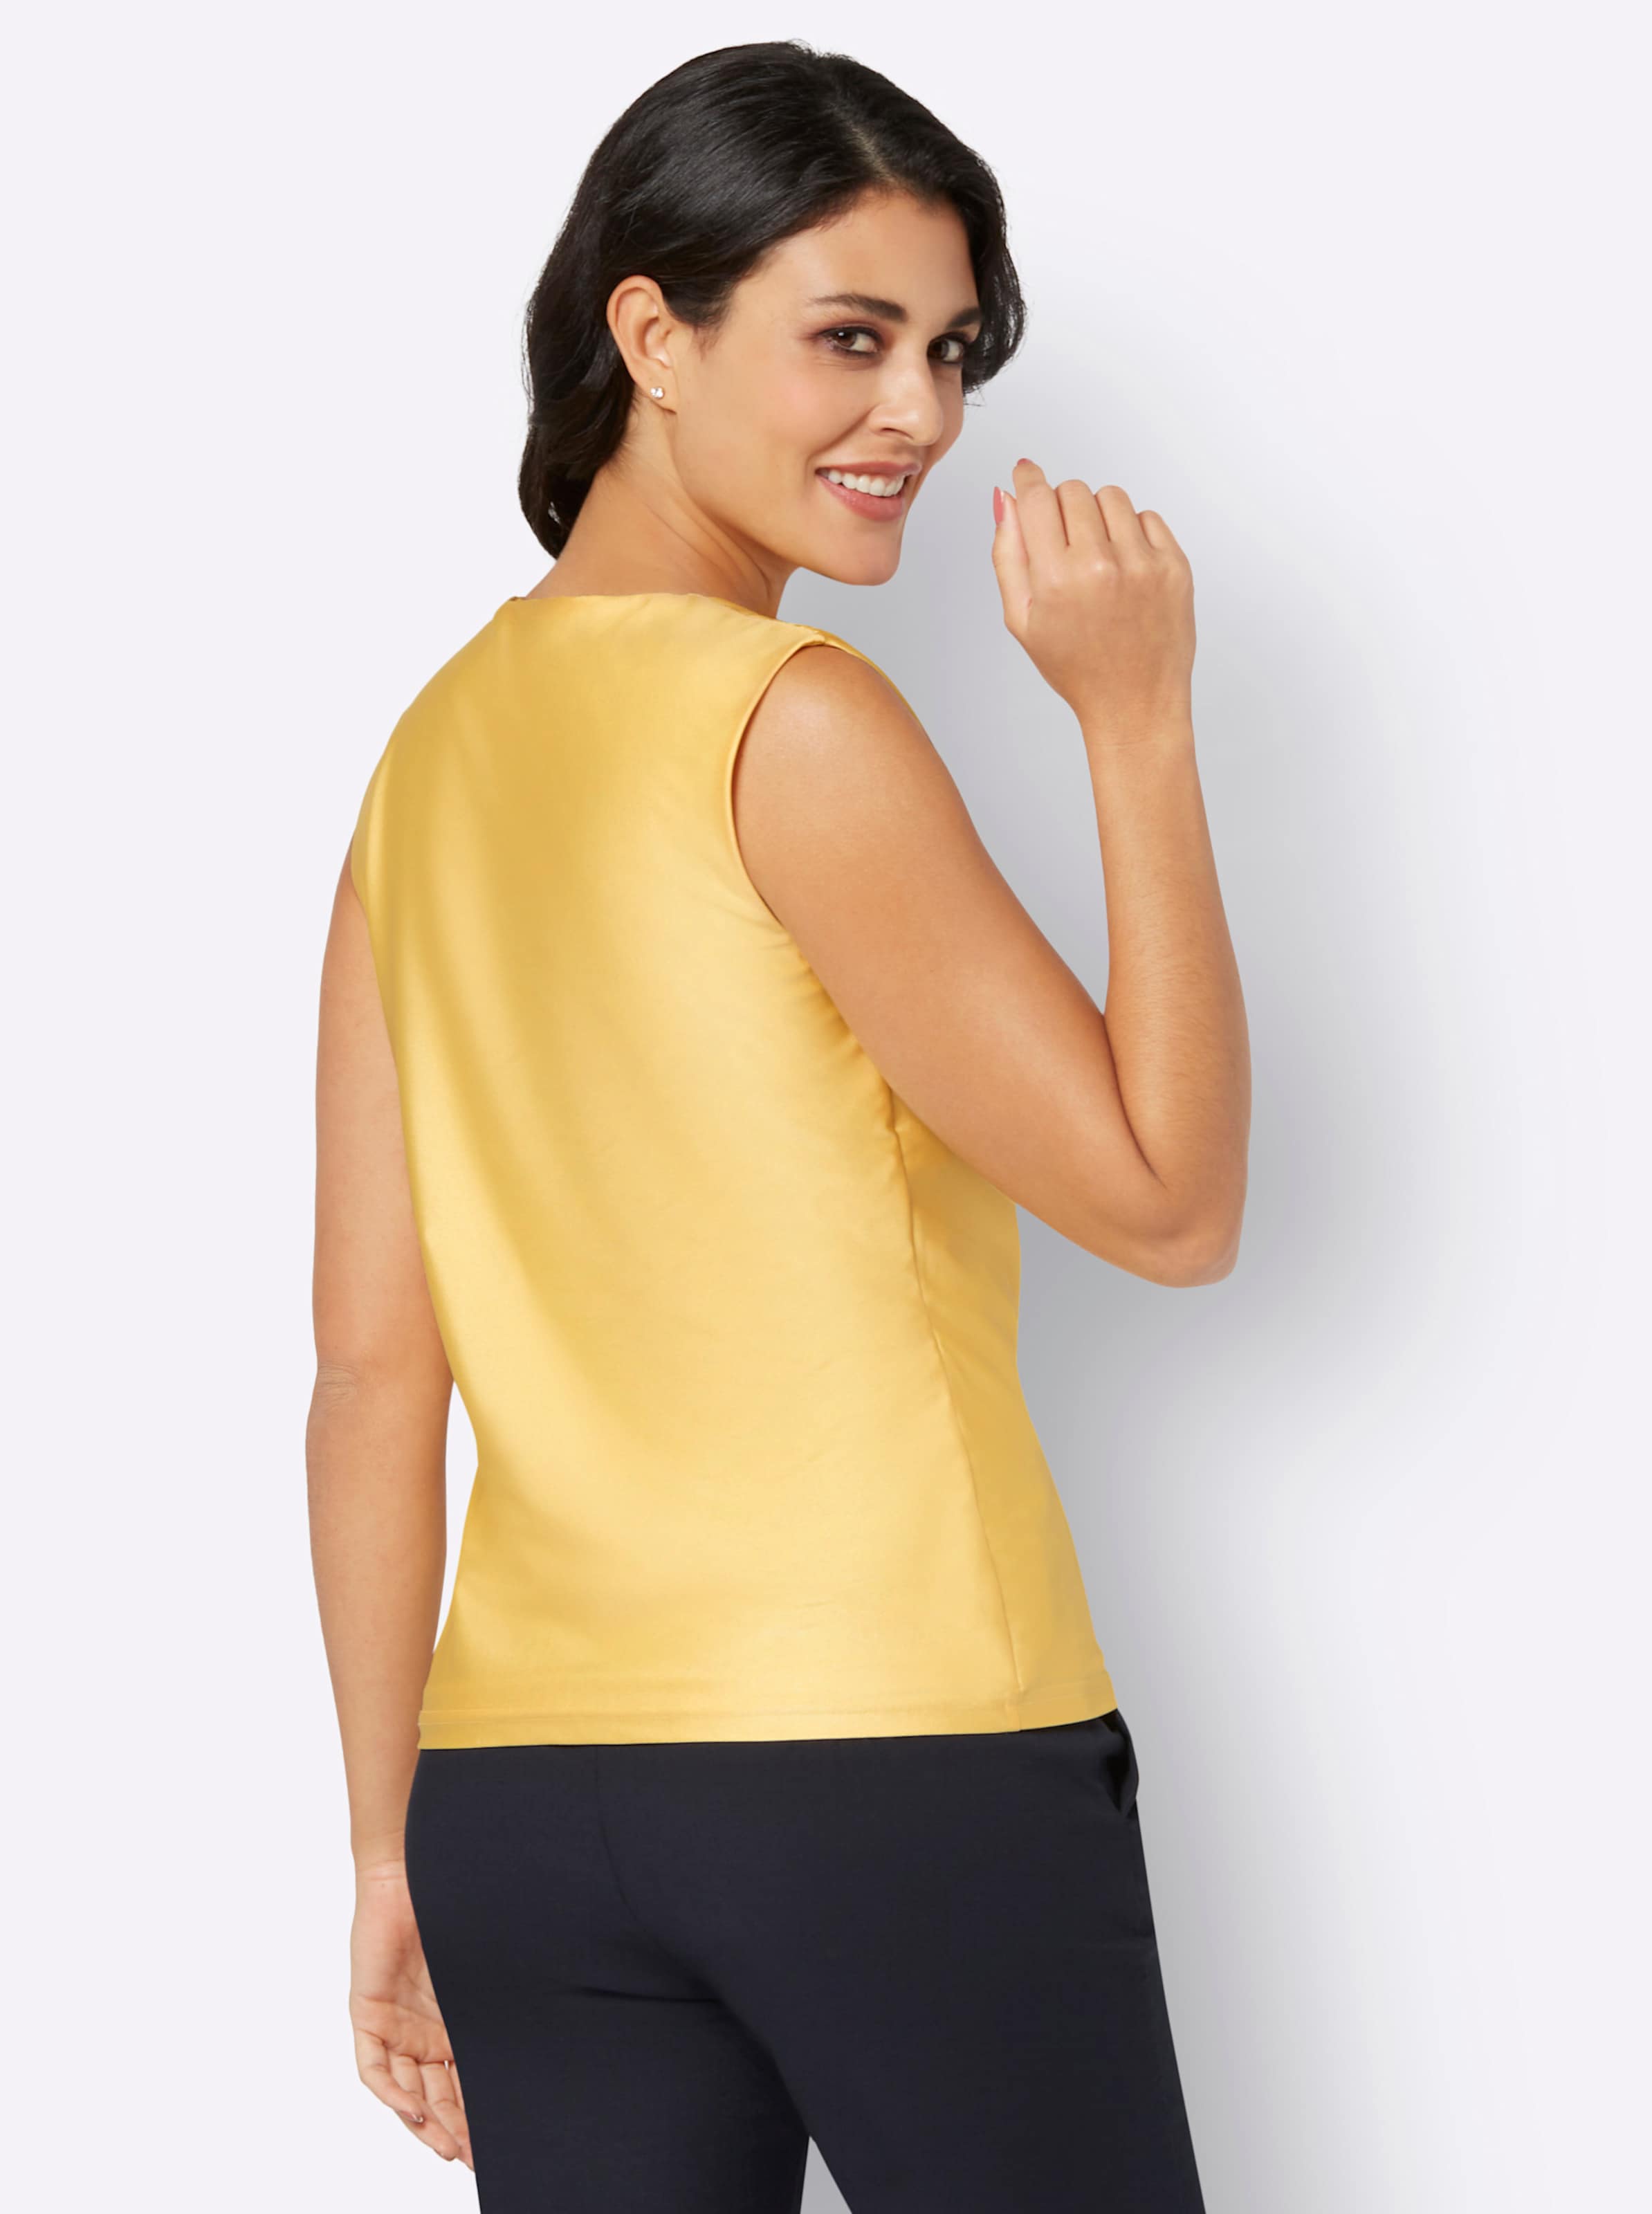 Optik mit günstig Kaufen-Shirt in gelb von heine. Shirt in gelb von heine <![CDATA[Die Wasserfall-Optik und die Raffungen an Schulter und Seitennaht sorgen bei diesem Shirt mit recyceltem Polyester für Furore! Denn sie schmeicheln gekonnt und sehen aufregend aus. Die Qualität i